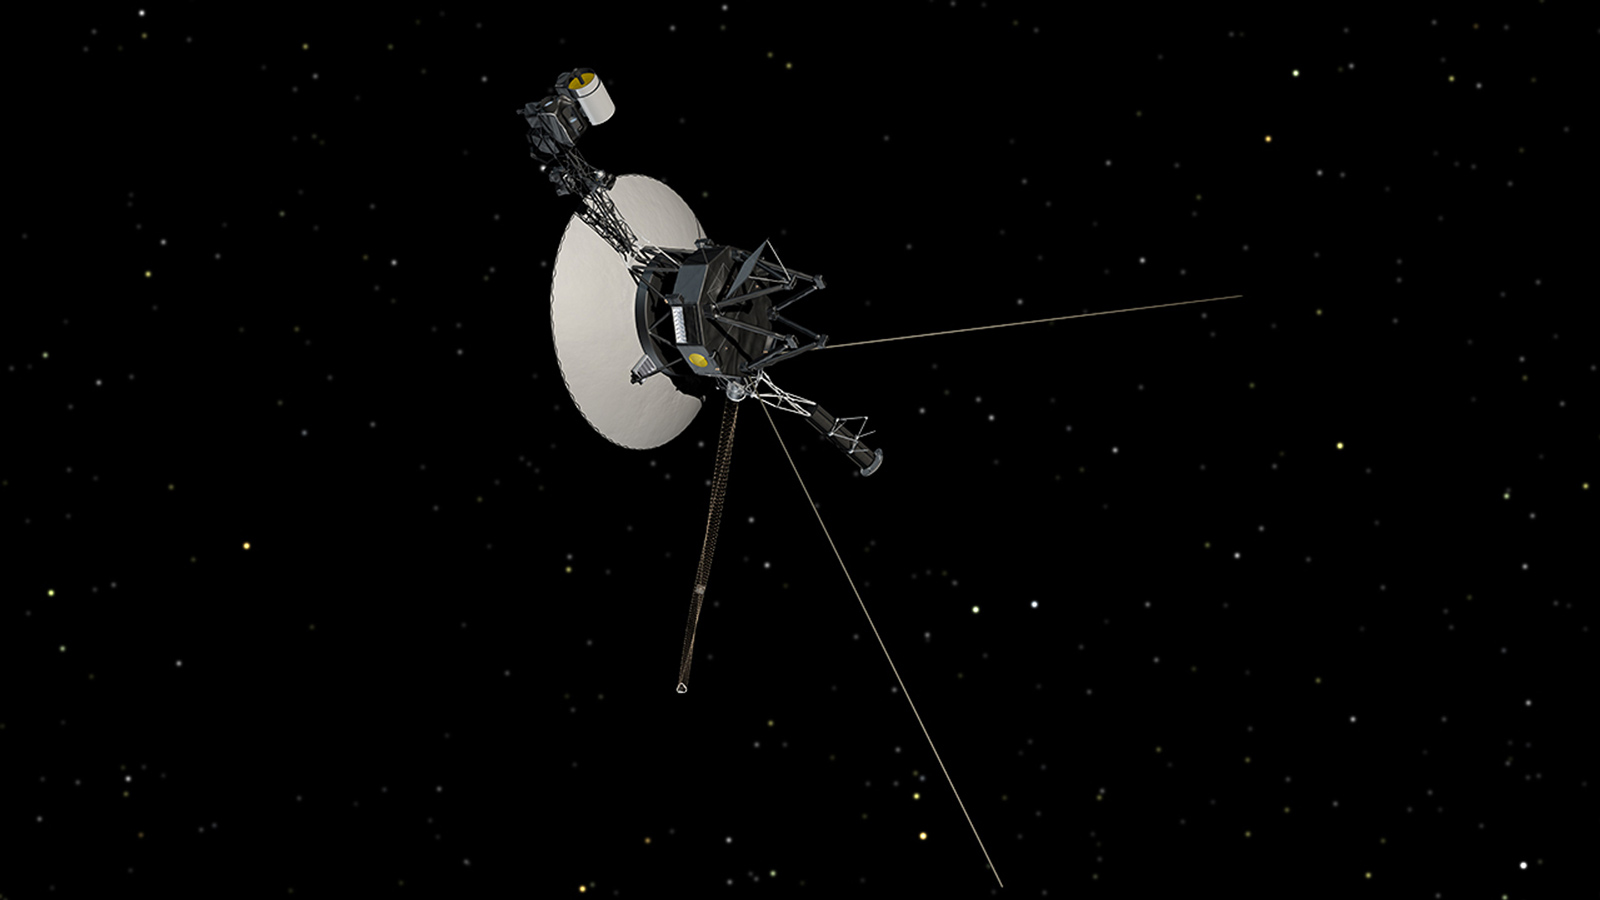 slide 2 - Illustration of Voyager in space